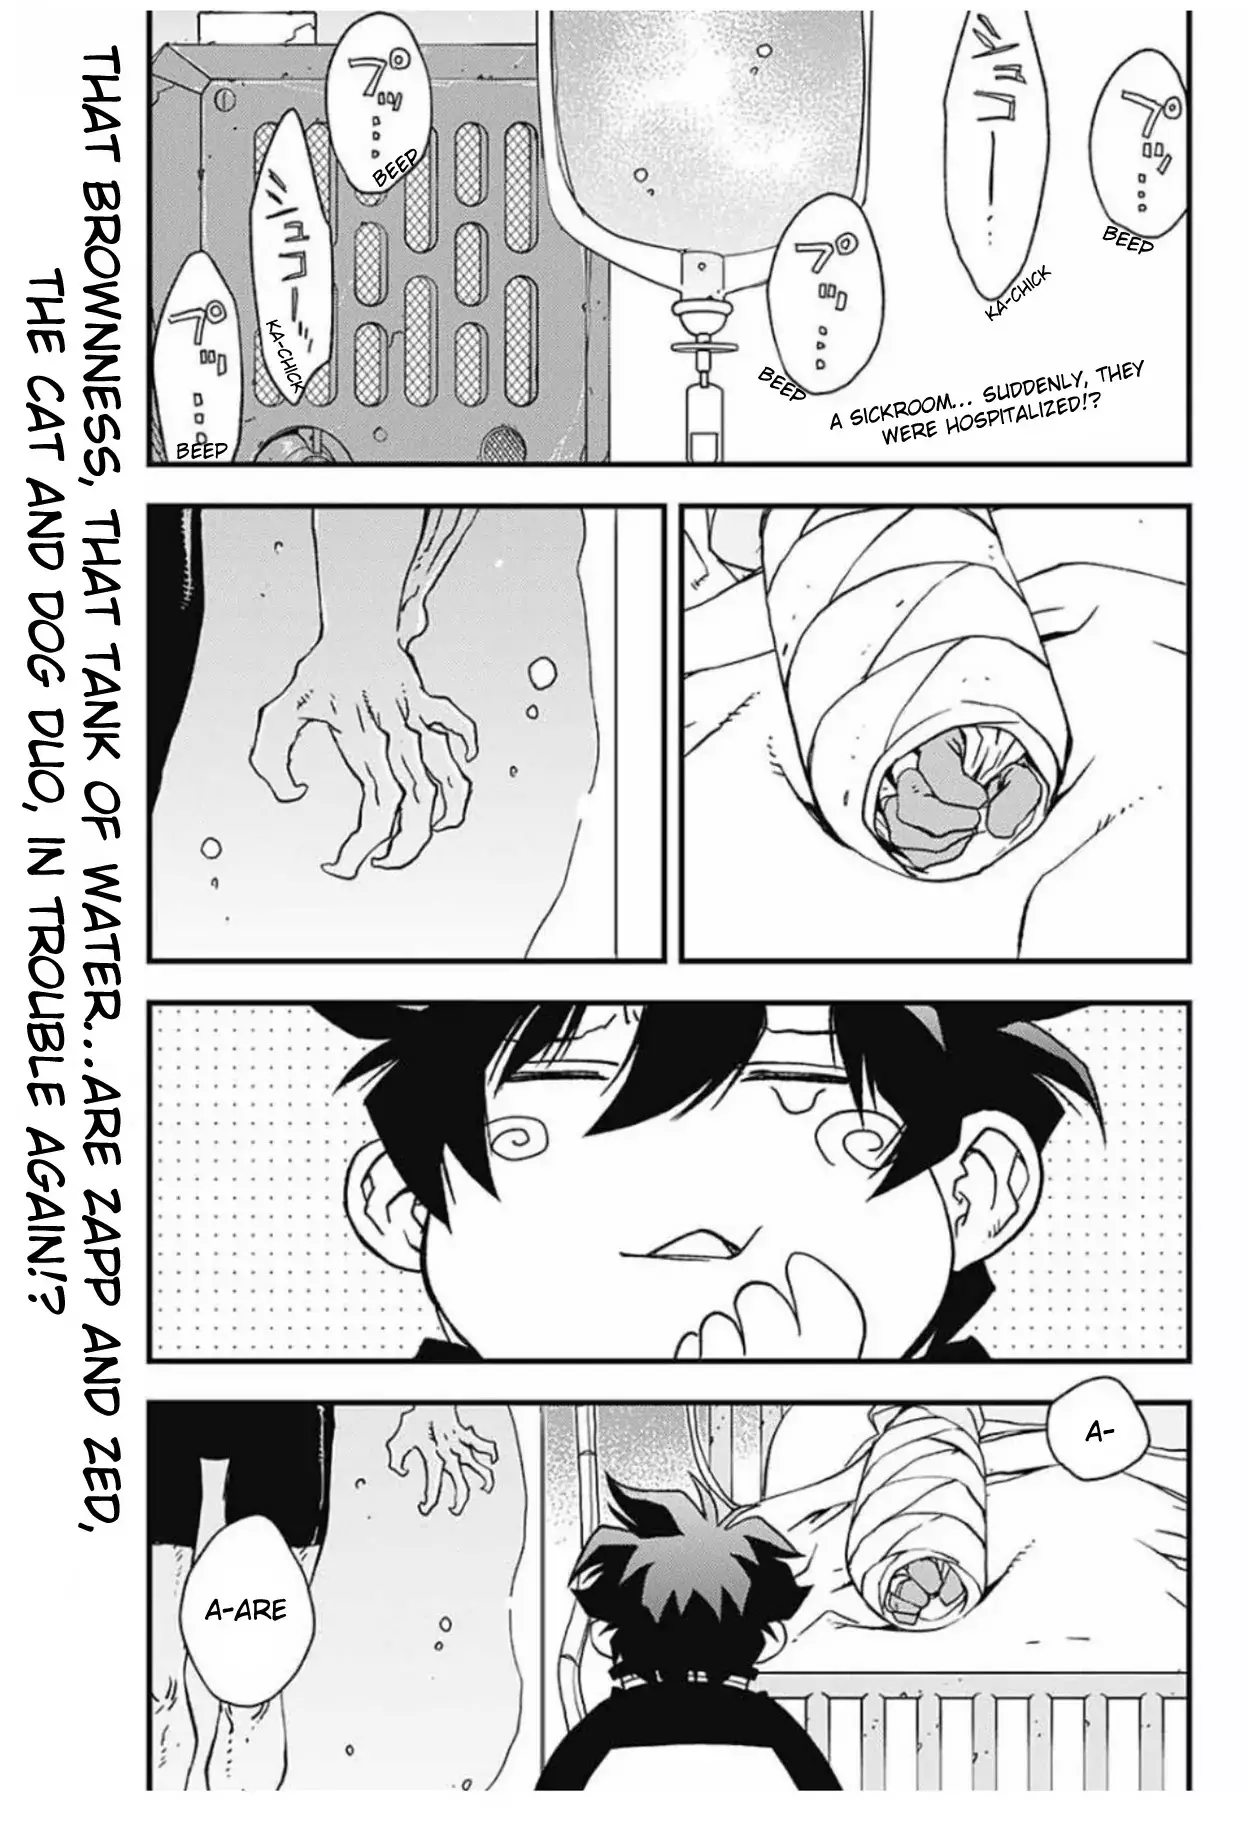 Kekkai Sensen - Back 2 Back - 7 page 3